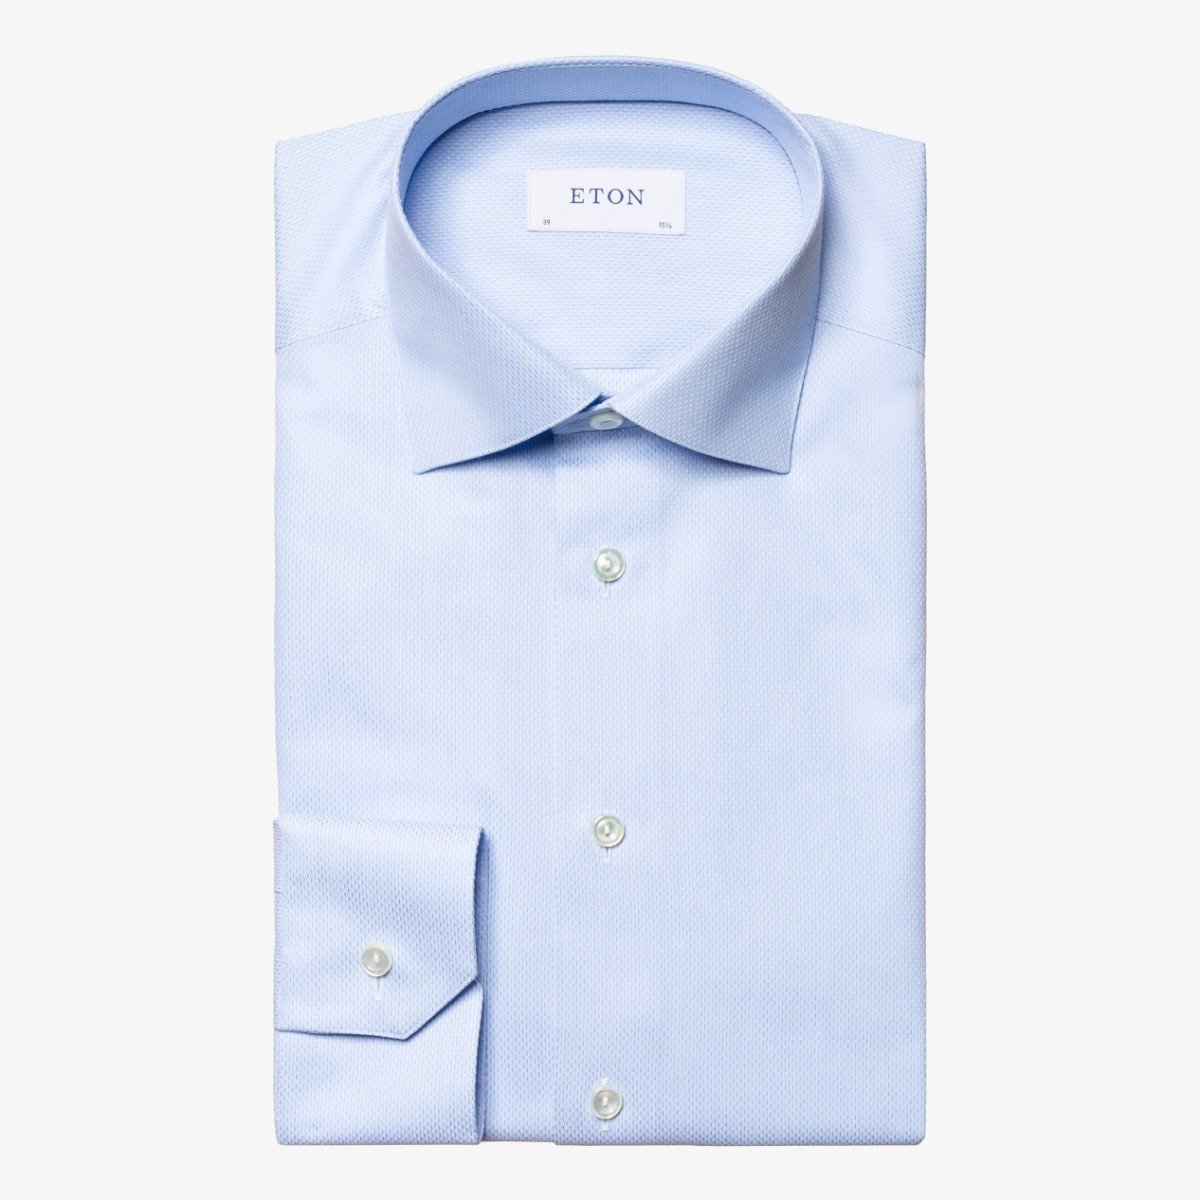 Eton blue slim fit fine pique men's dress shirt